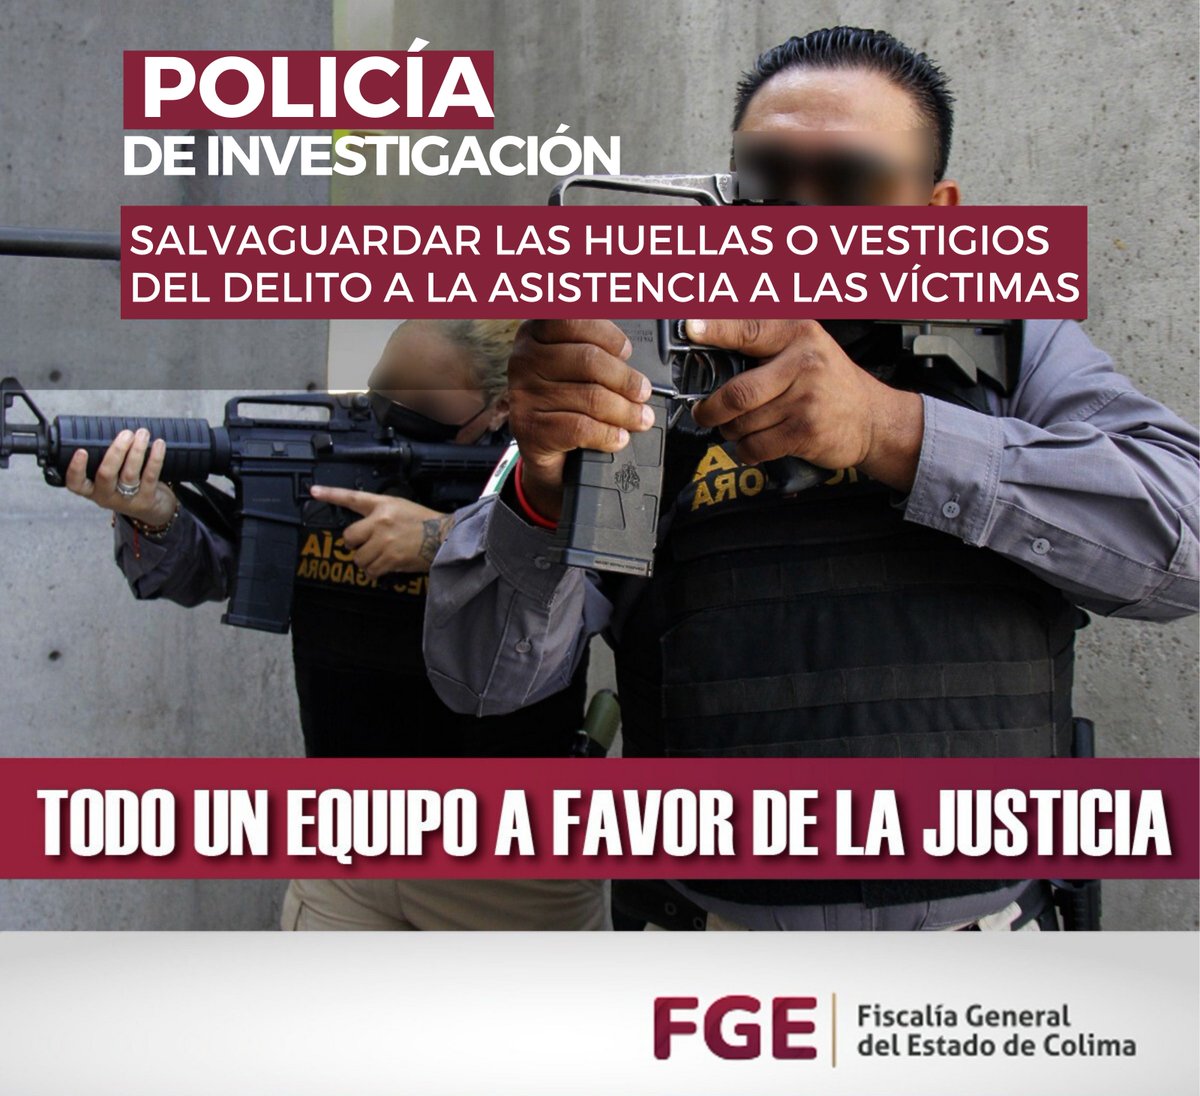 #PolicíaDeInvestigación 
#FGEColima